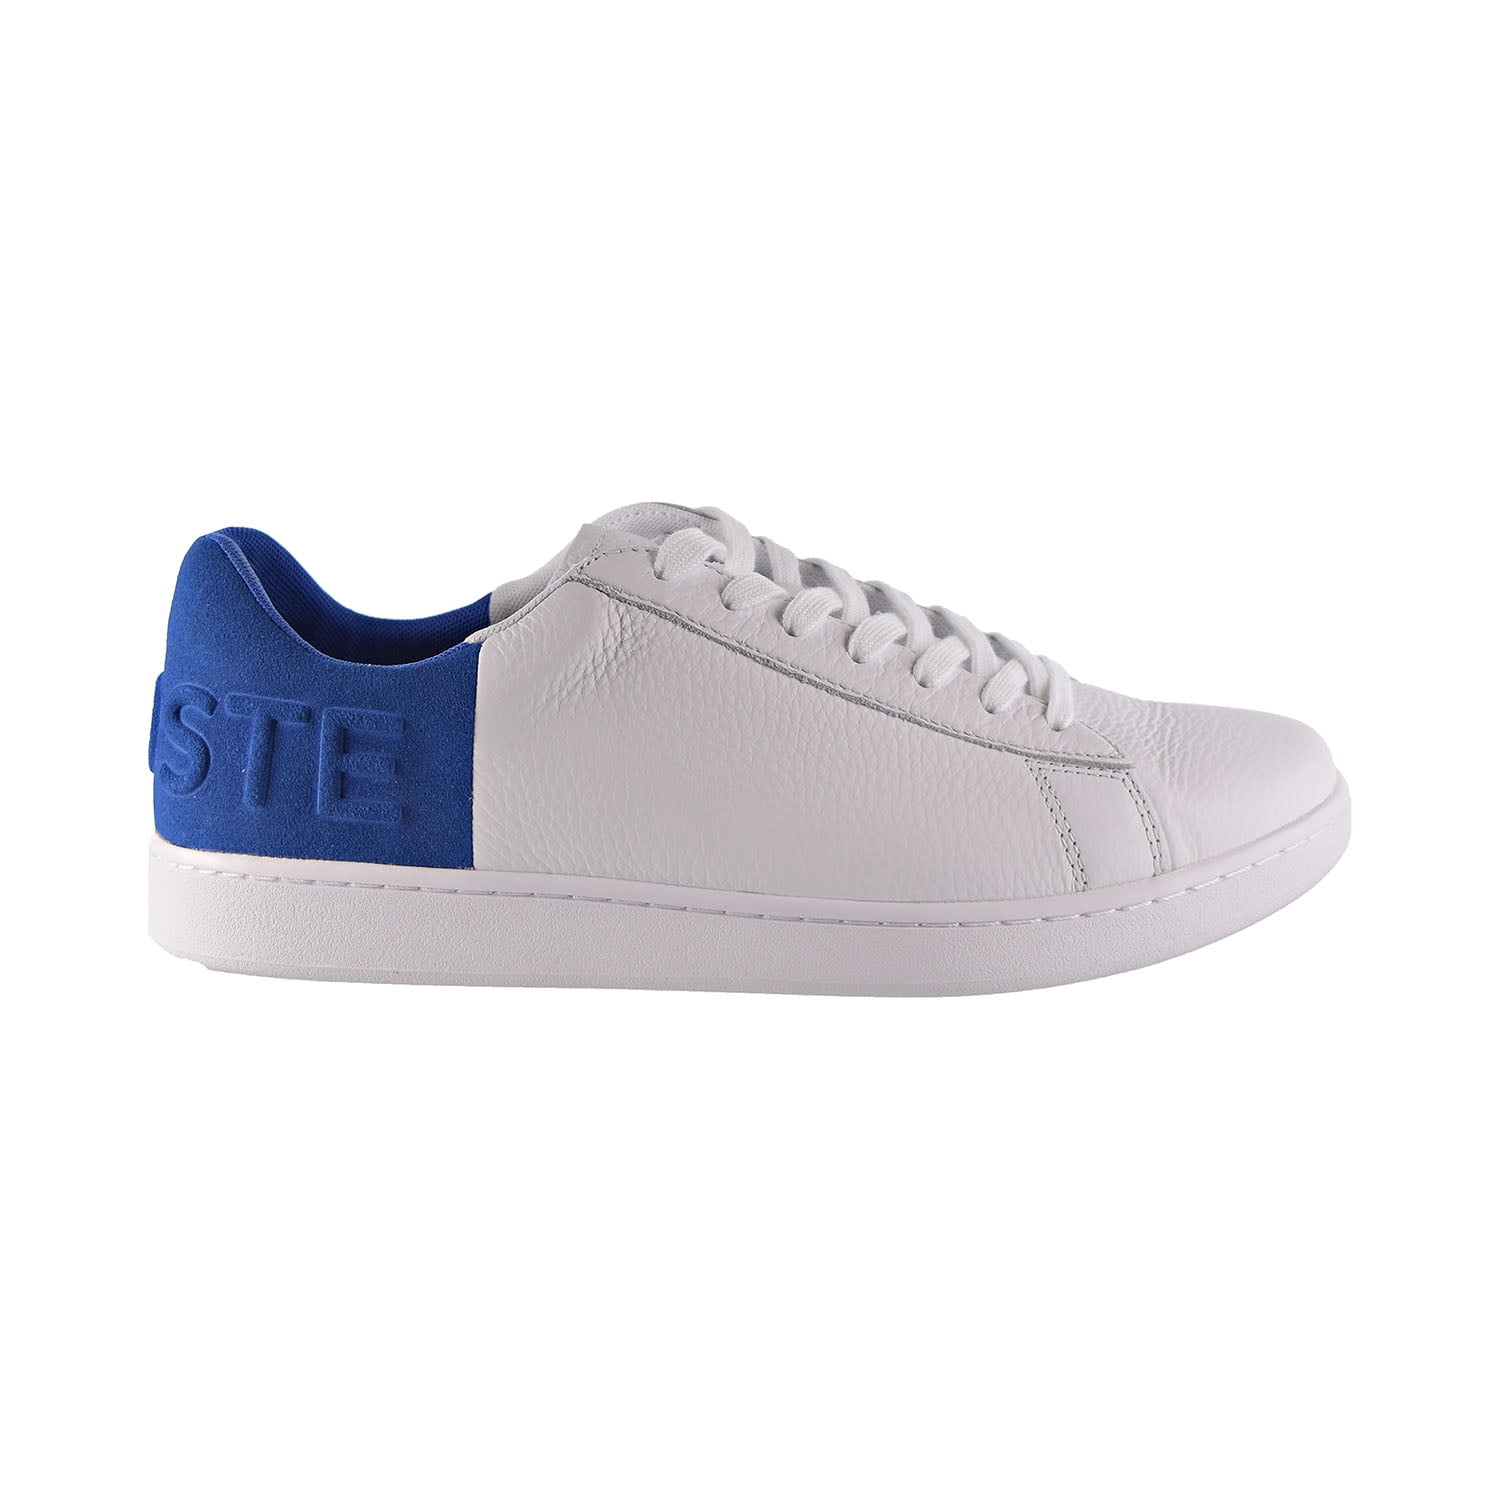 Lacoste Carnaby Evo 419 2 SMA Men's Shoes White/Blue - Walmart.com